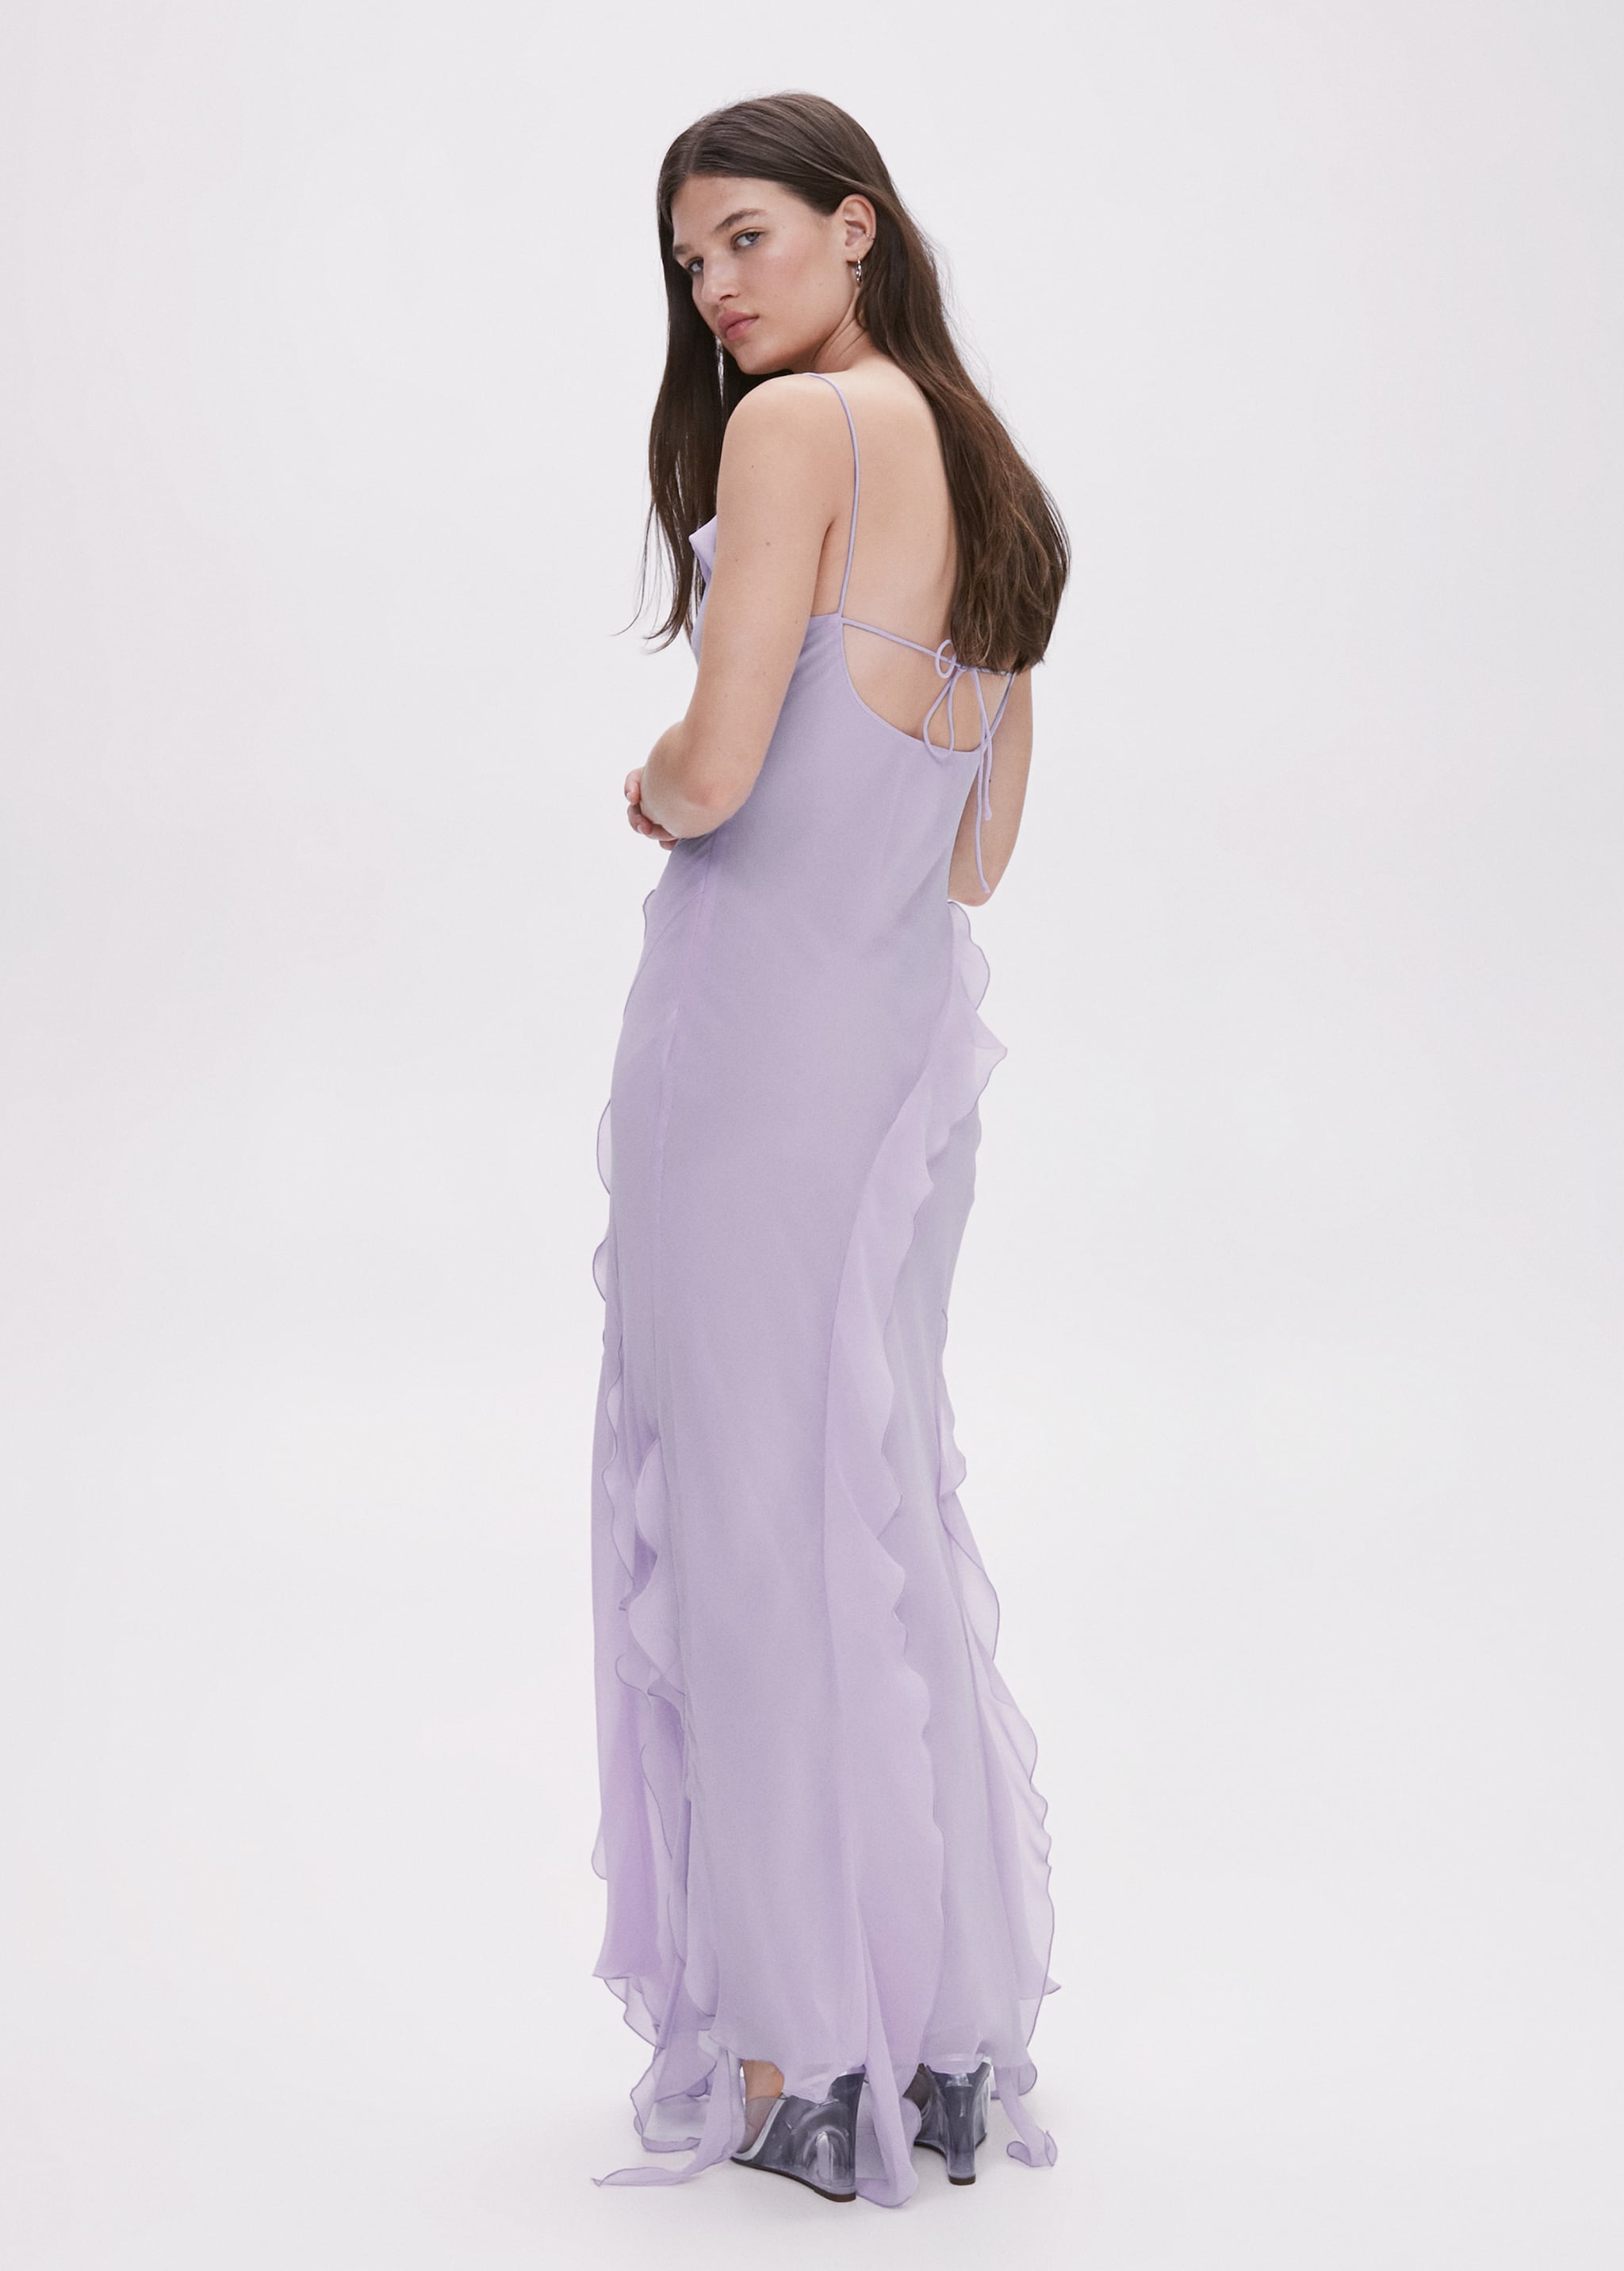 Kleid mit Volant-Details - Rückseite des Artikels